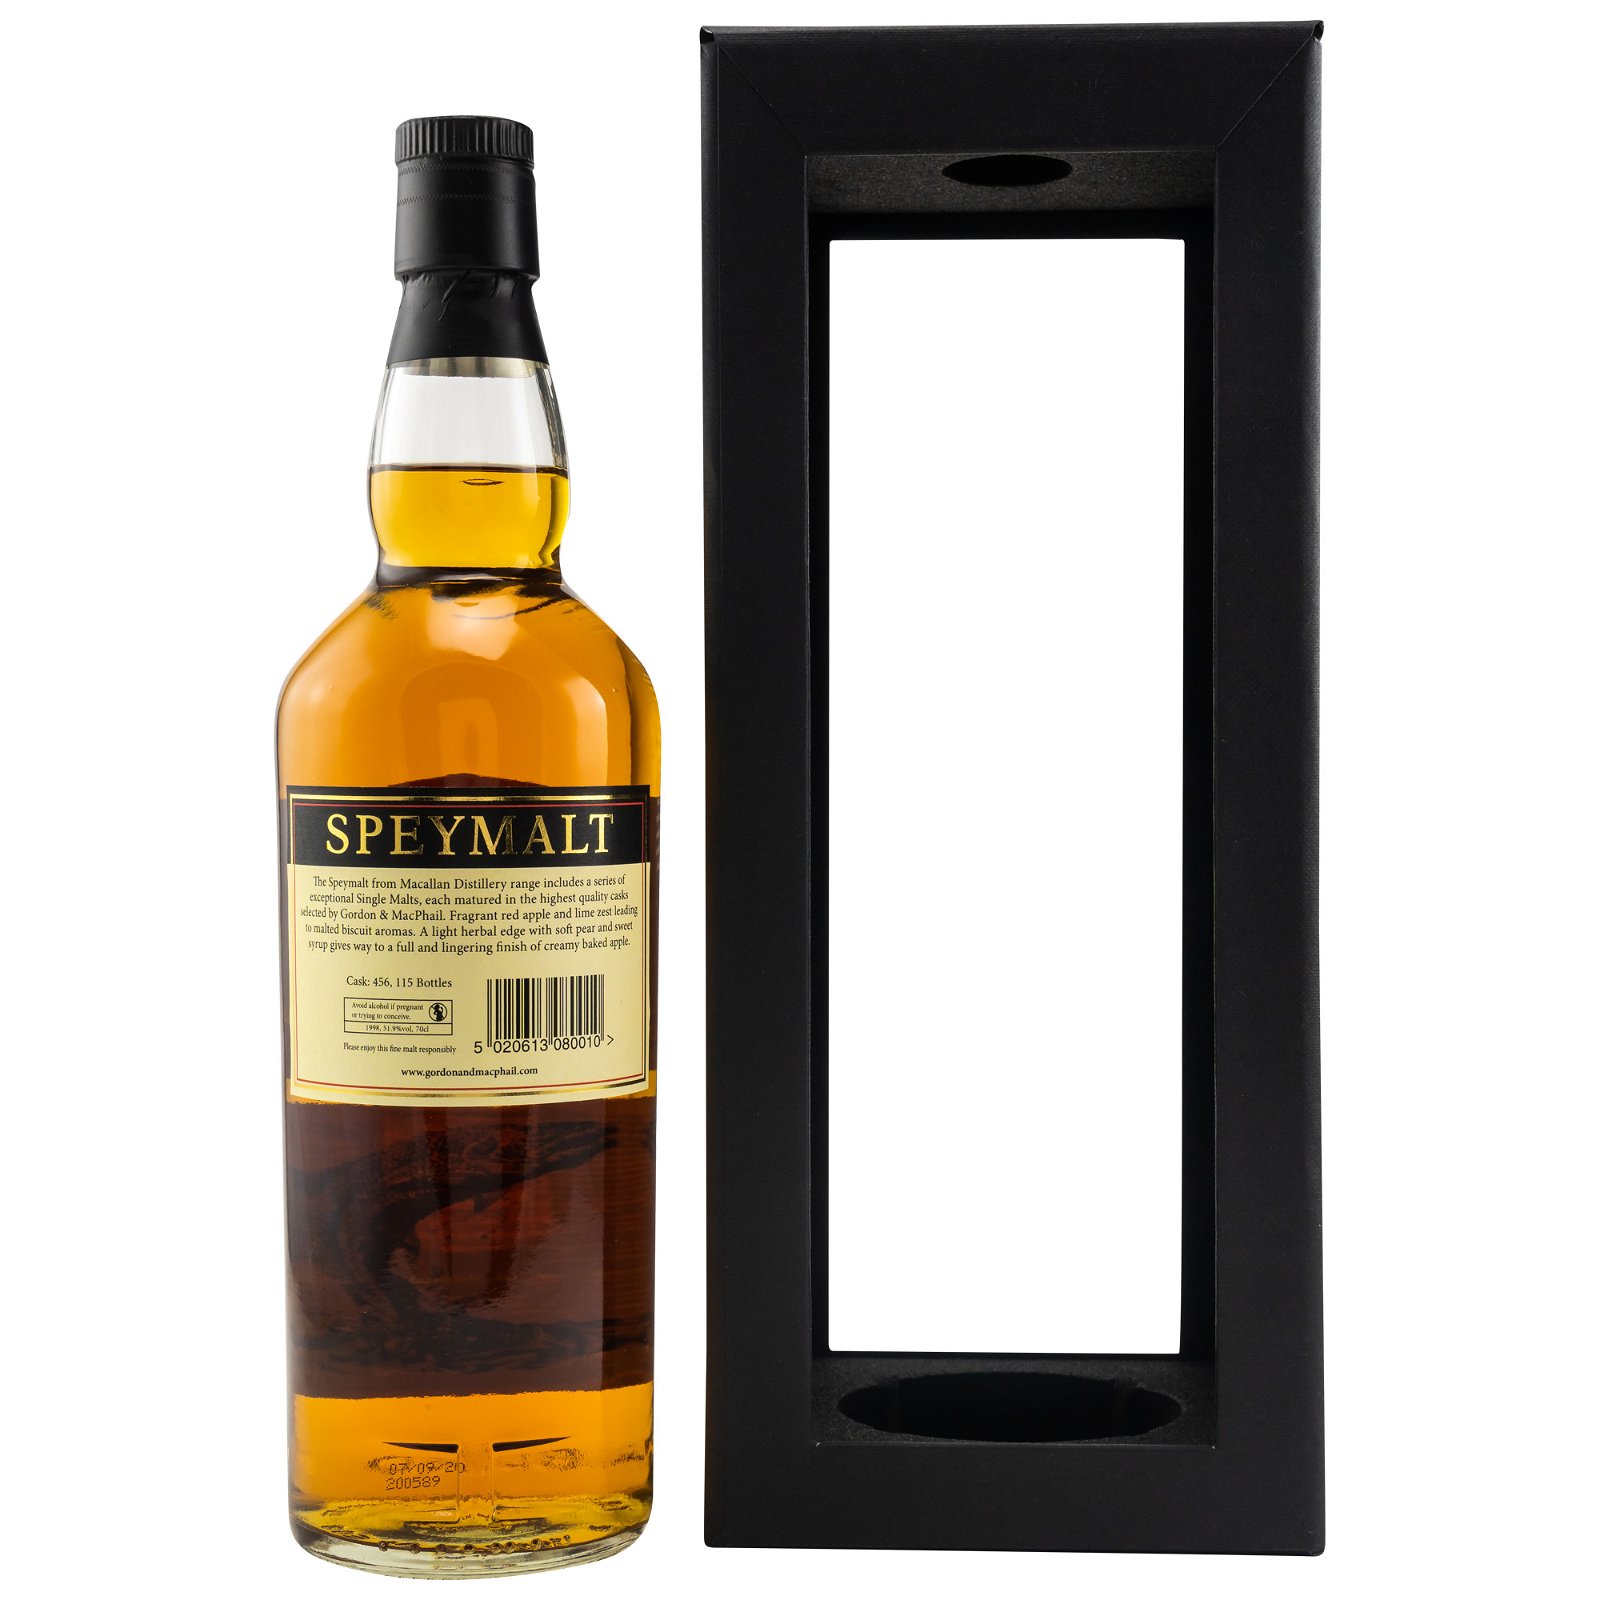 Gordon & Macphail Speymalt Macallan Distillery 98/20 Cask Strength Scotch Whisky